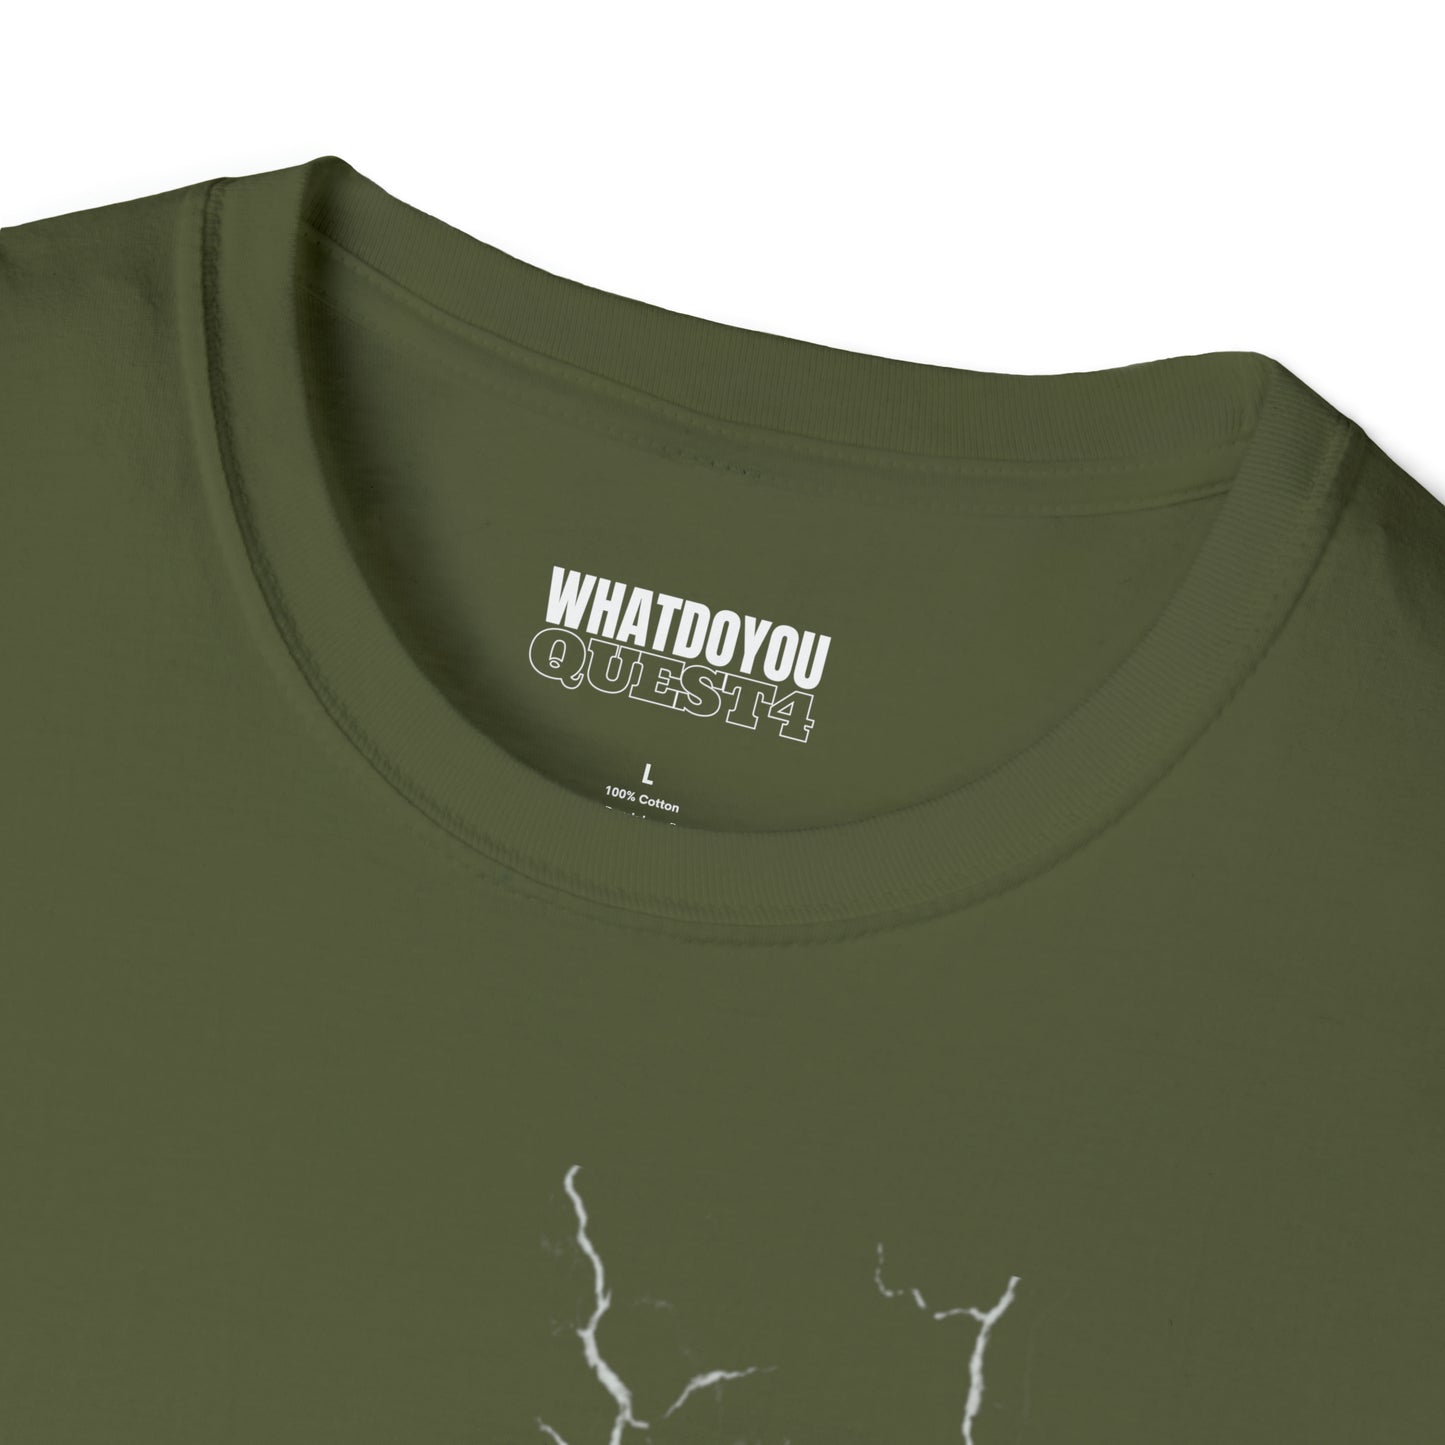 MANICEPTION Unisex Softstyle T-Shirt